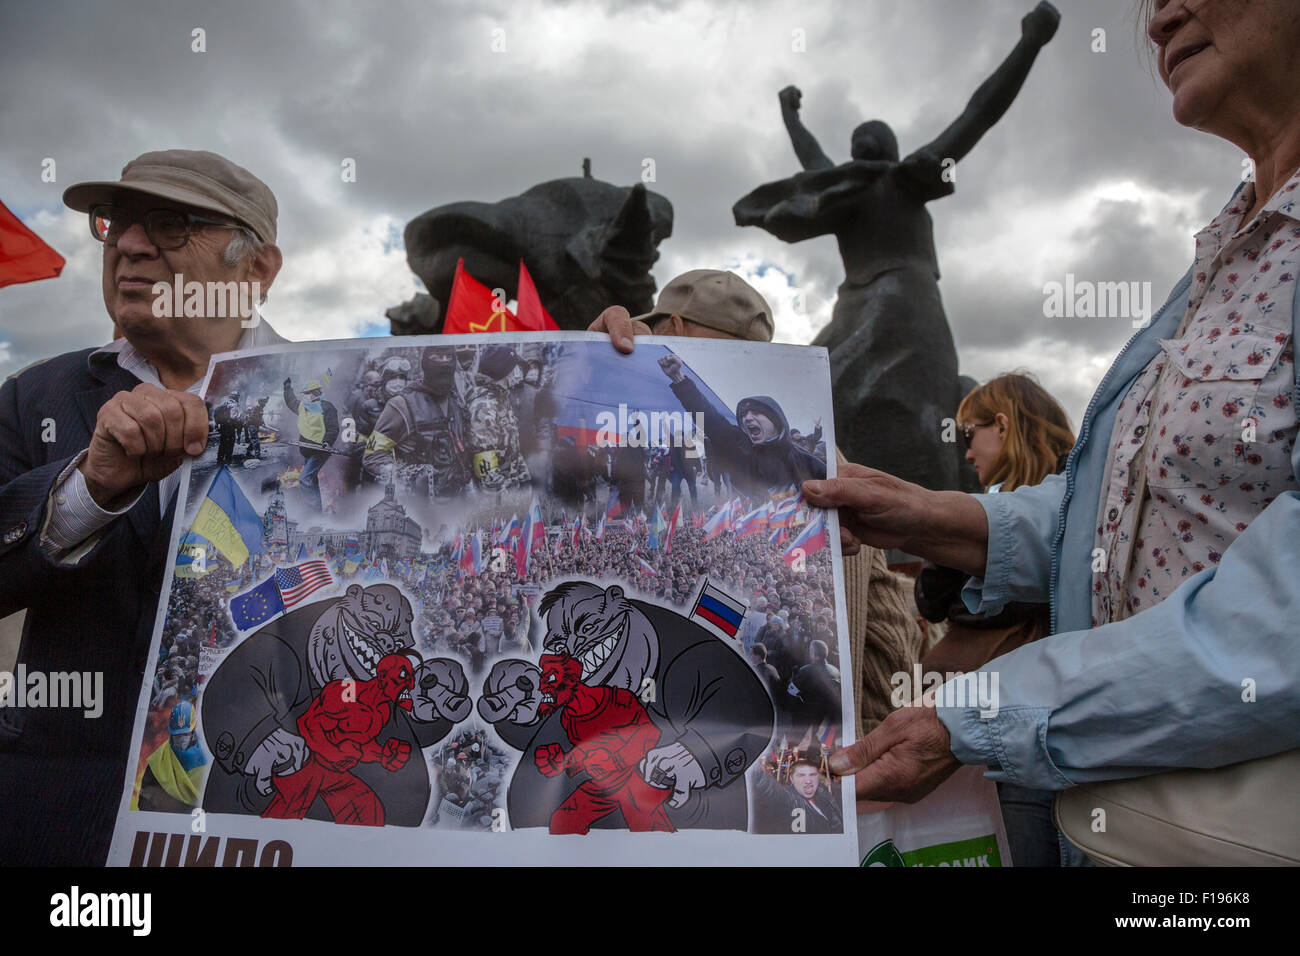 Moscou, Russie. Août 30, 2015. Tenir une bannière contre les militants le conflit en Ukraine au cours d'un rassemblement contre les exactions de la remise en état de maisons de vacances à Moscou, Russie Crédit : Nikolay Vinokourov/Alamy Live News Banque D'Images